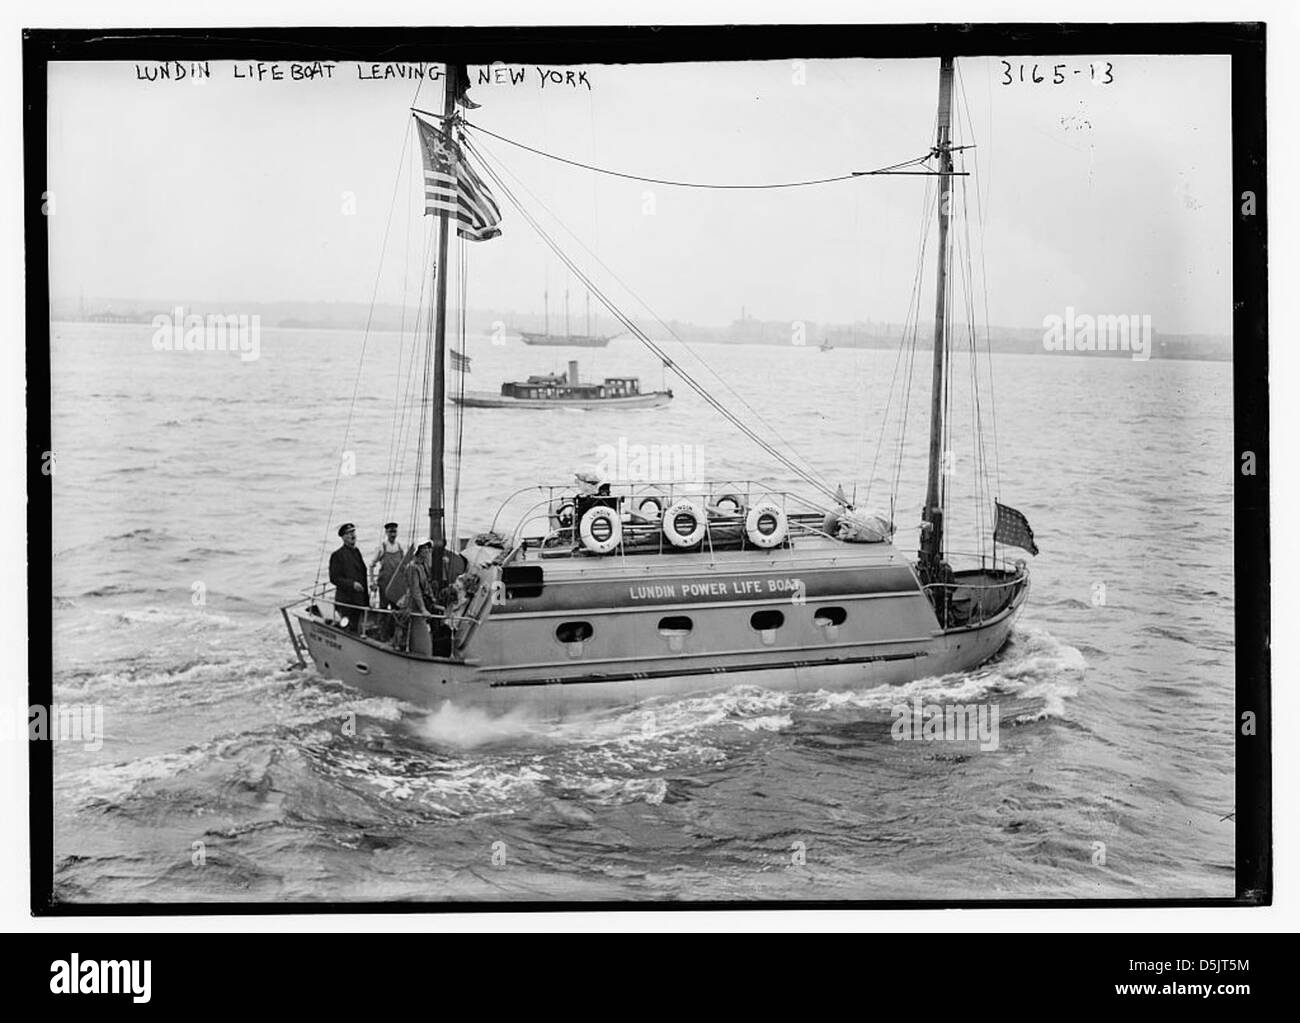 Lundin lifeboat leaving N.Y. (LOC) Stock Photo